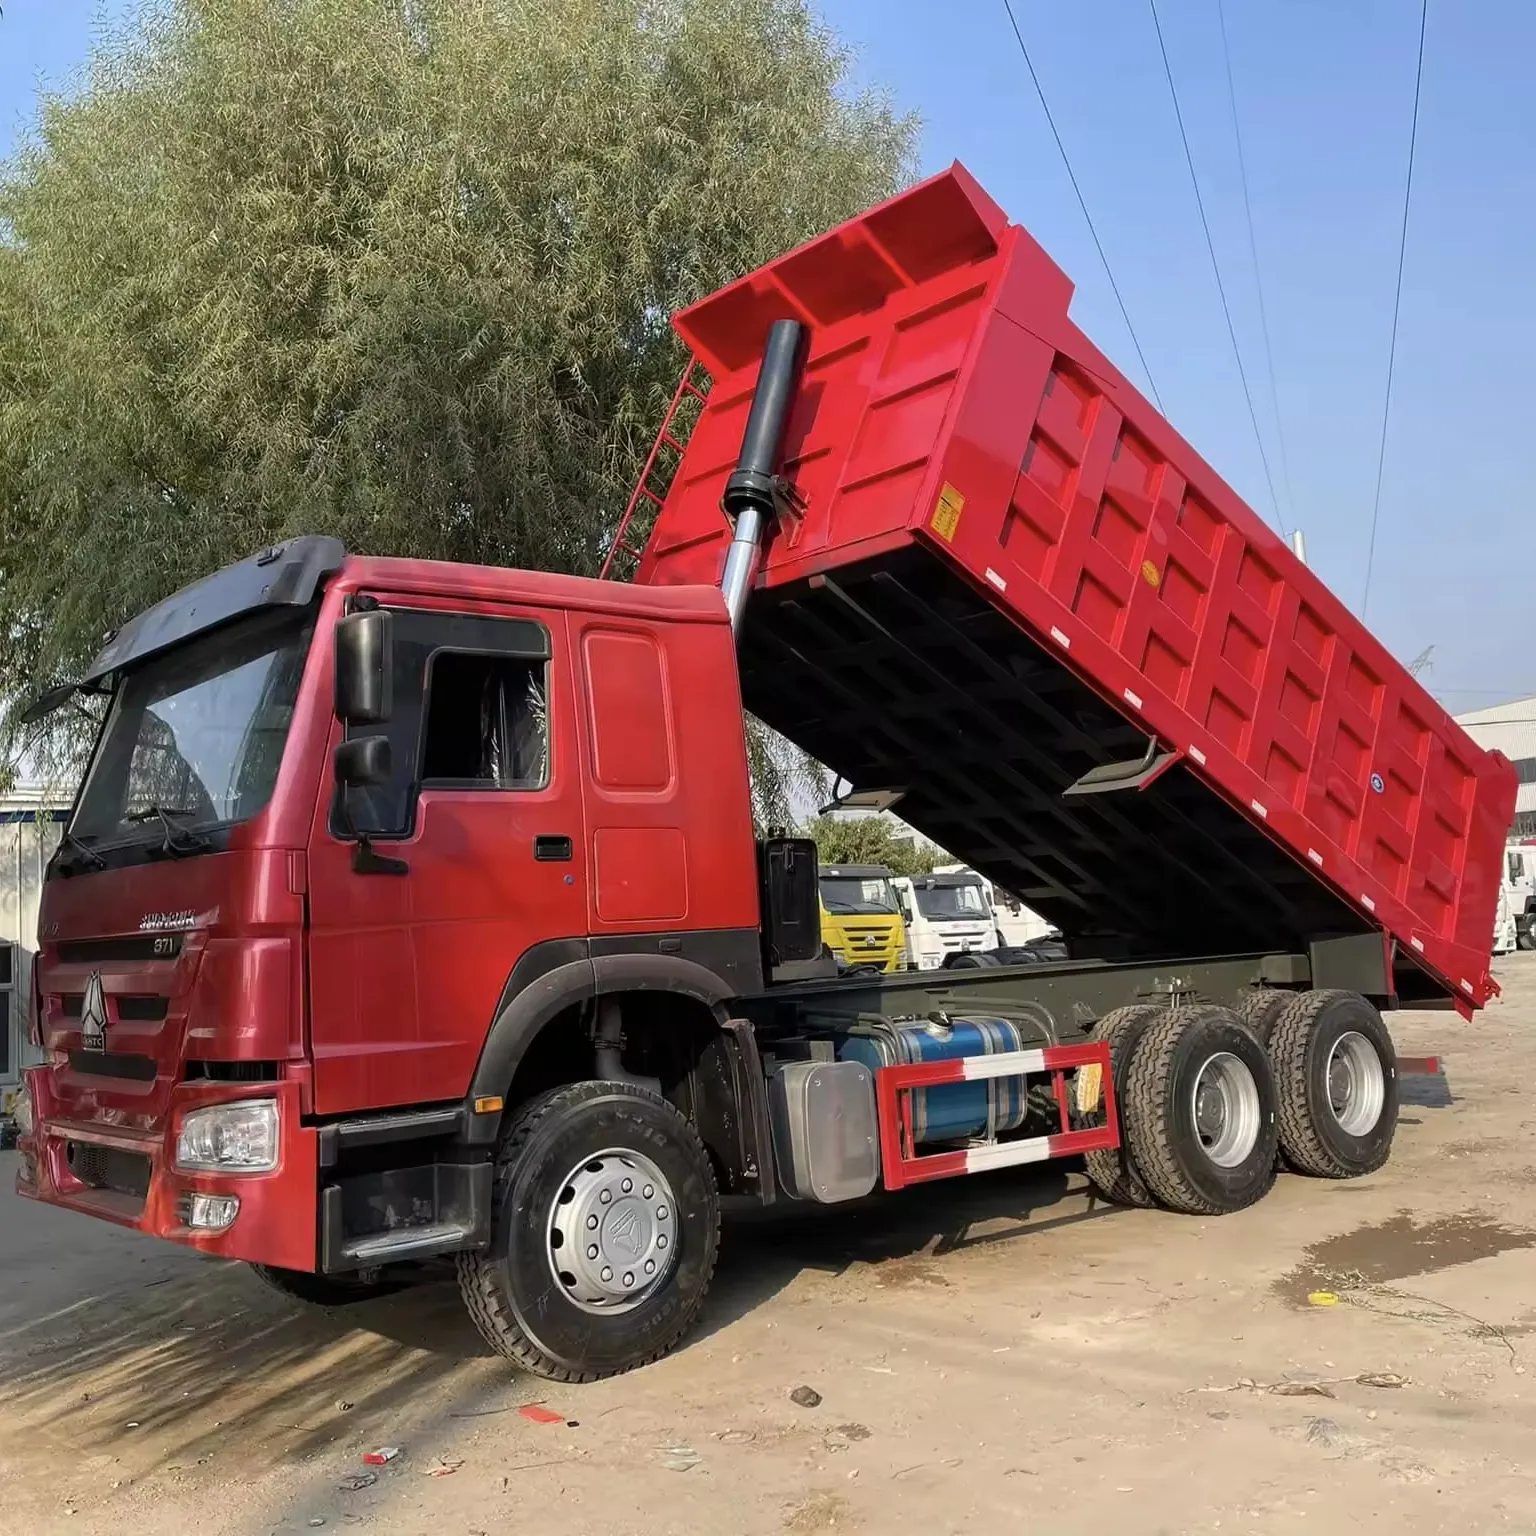 Le camion à benne basculante chinois Howo, qui est en bon état, utilise un camion à benne basculante 6x4 avec une capacité de chargement de 20-30 tonnes